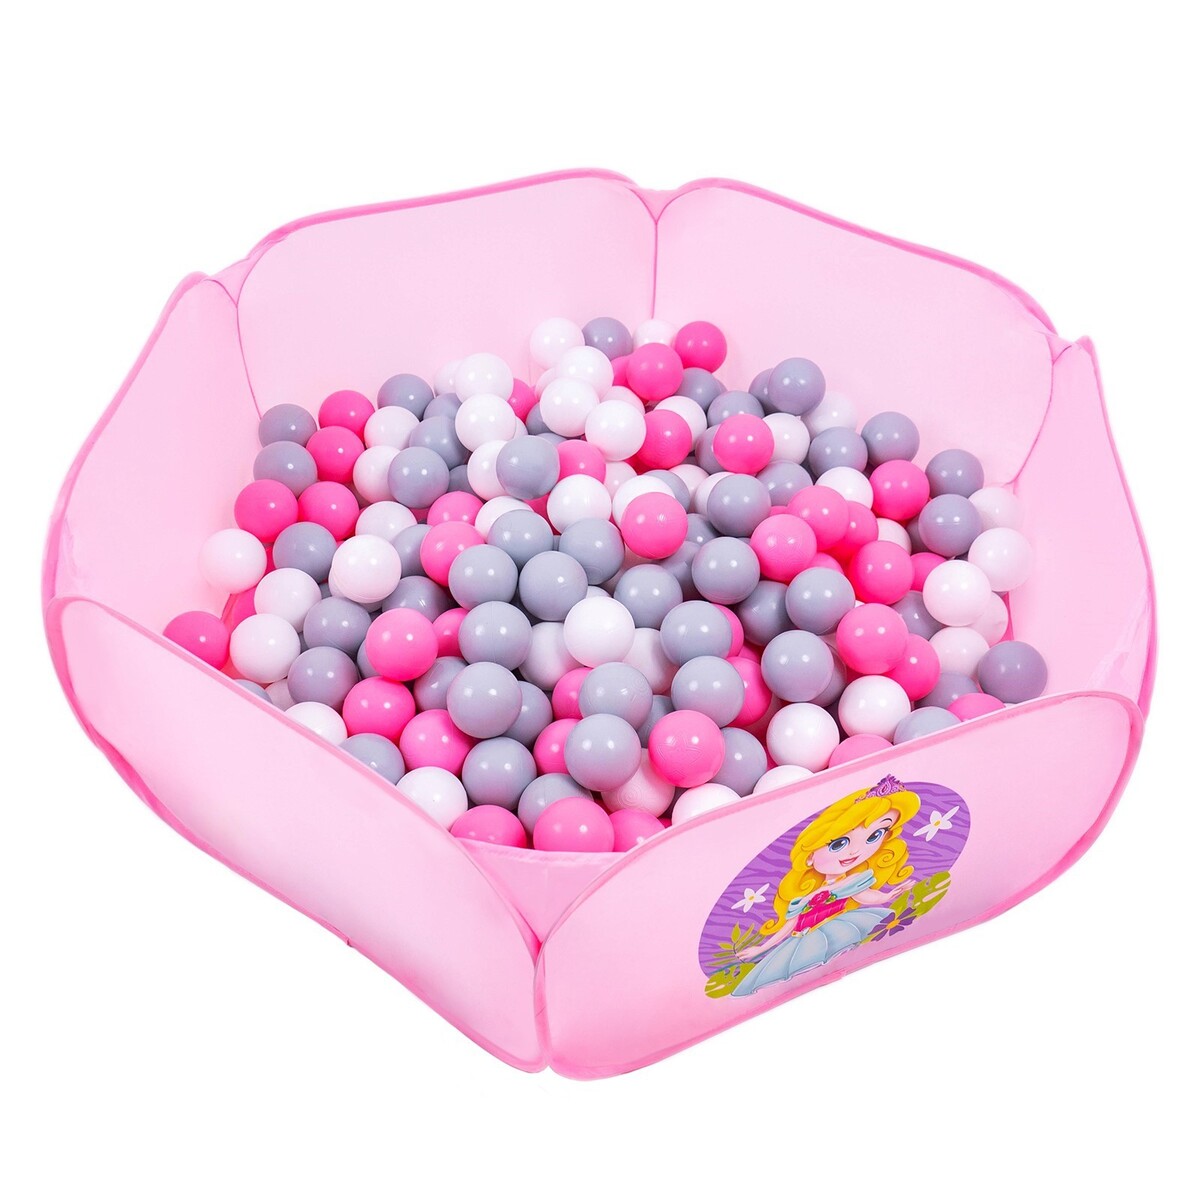 Шарики для сухого бассейна с рисунком, диаметр шара 7,5 см, набор 60 штук, цвет розовый, белый, серый шарики для сухого бассейна 100 штук диаметр 5 см